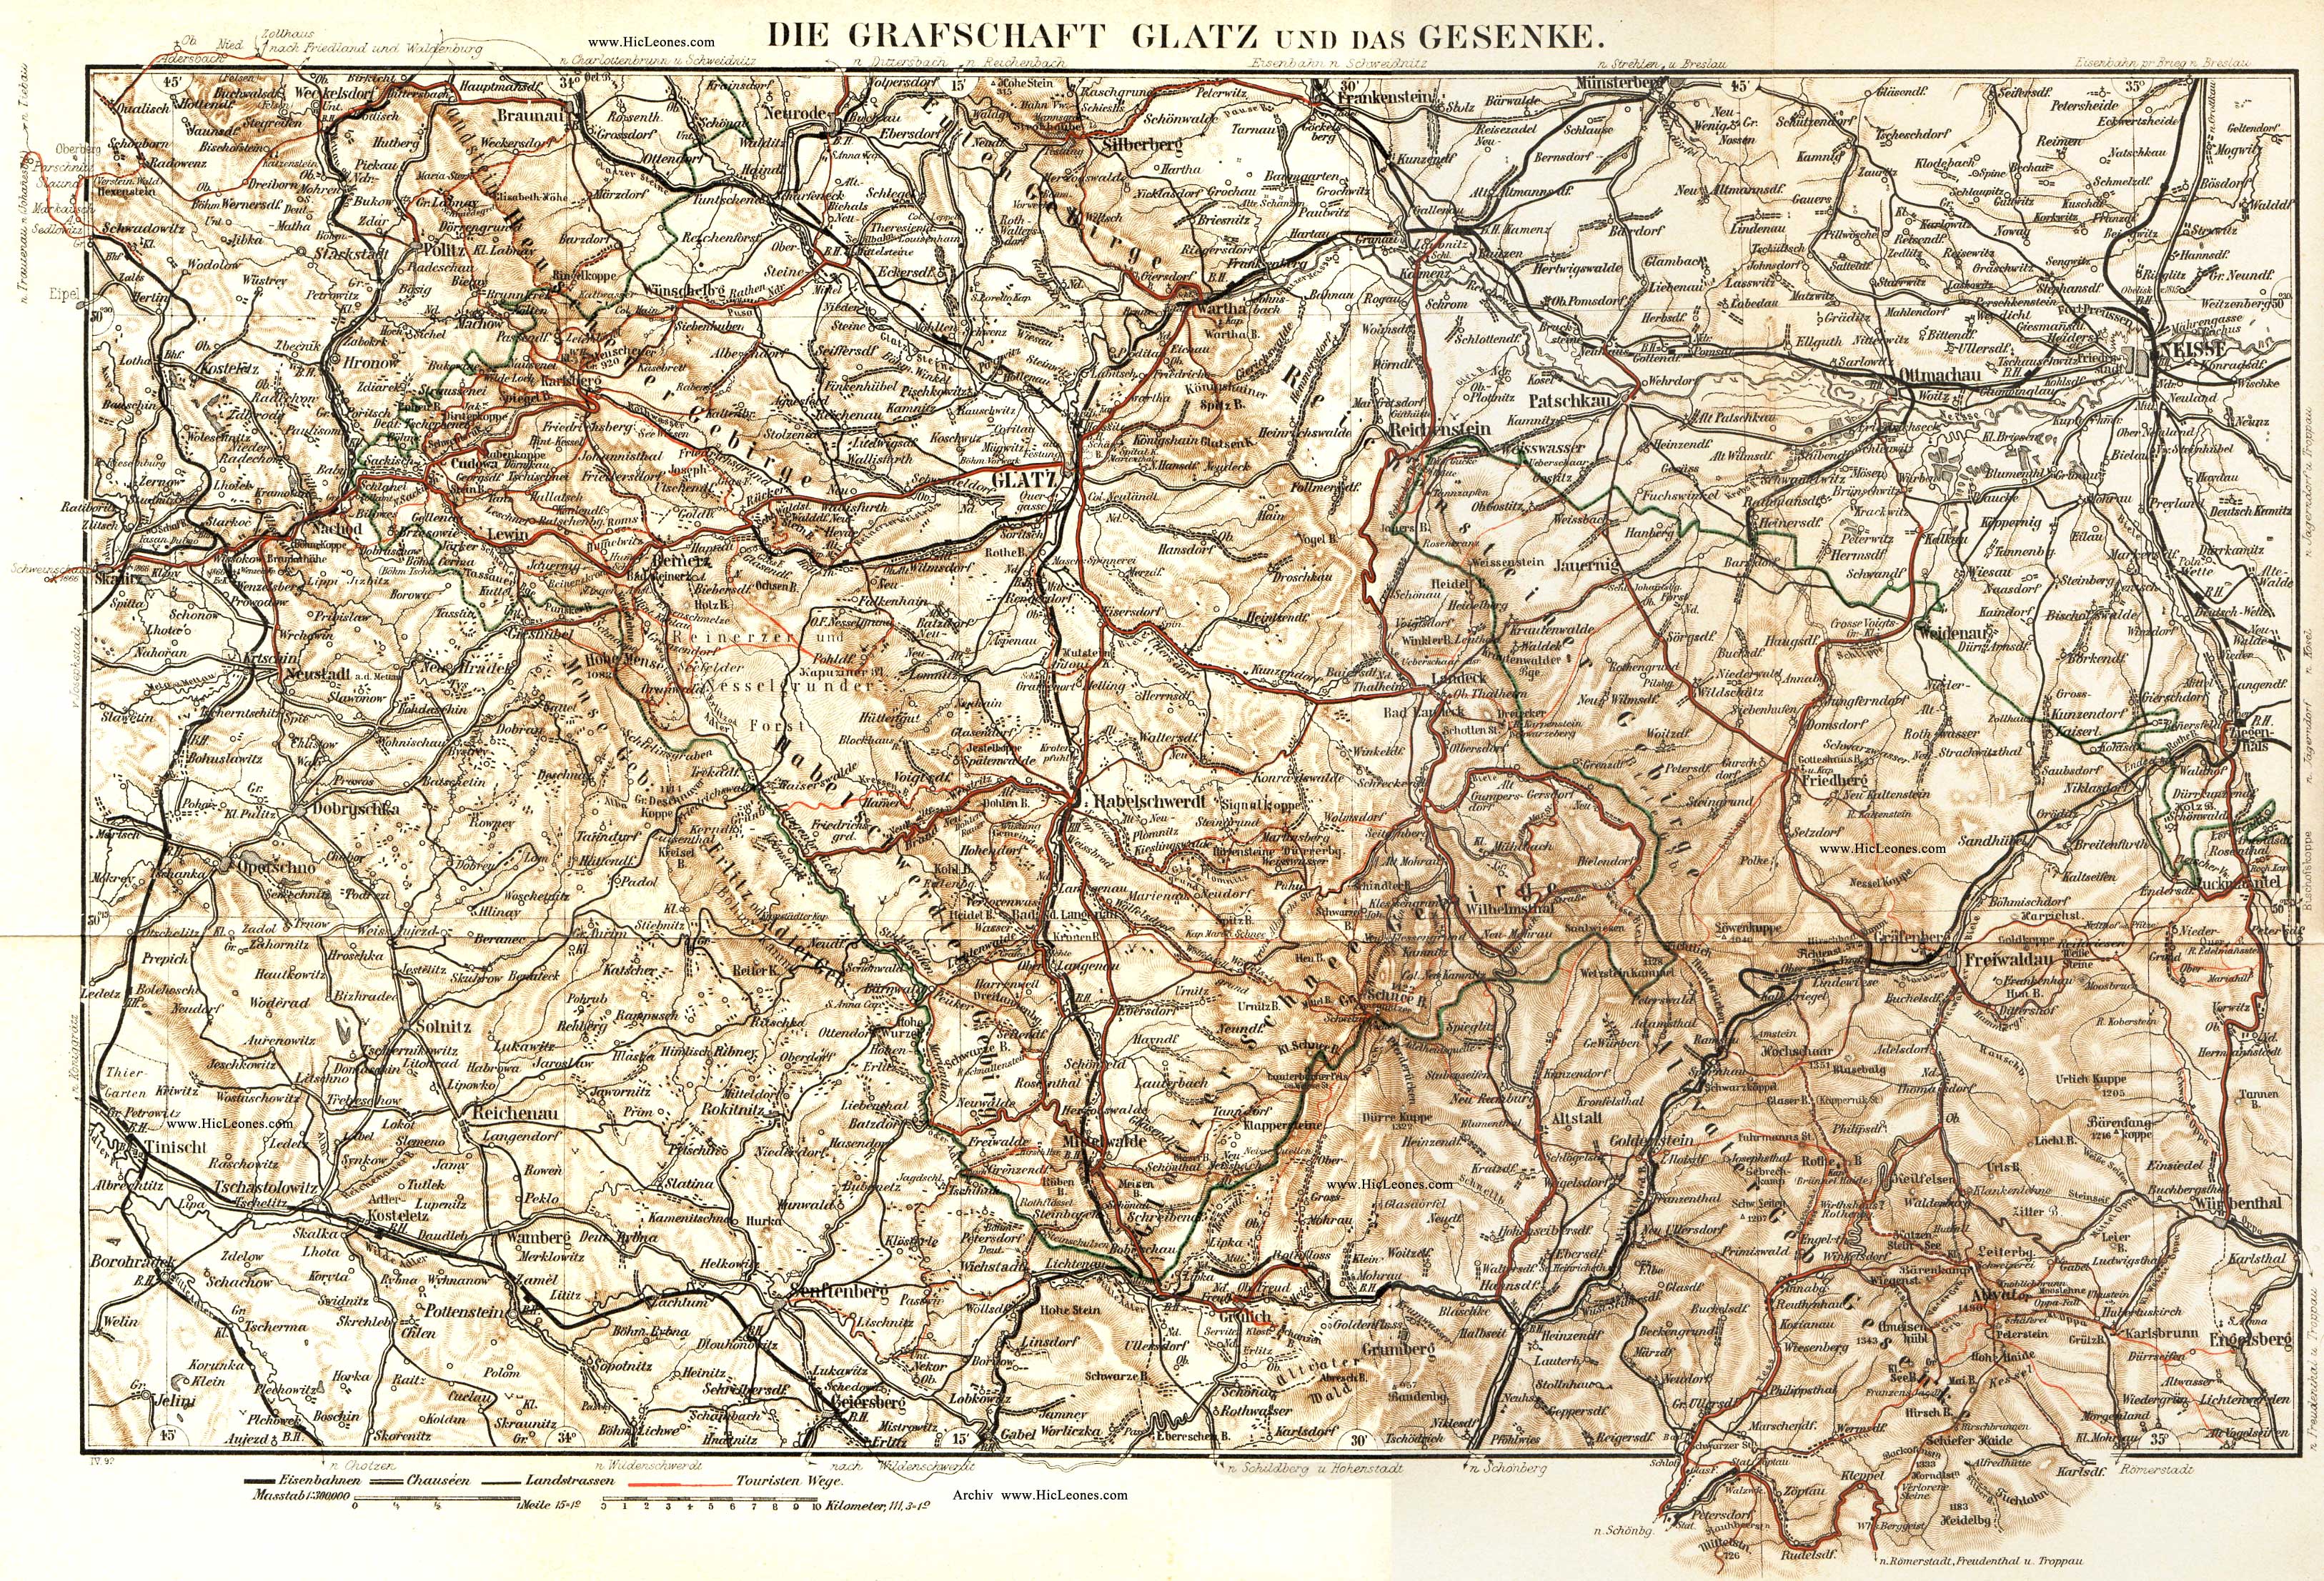 Meyers Reisebücher: Riesengebirge und die Grafschaft Glatz